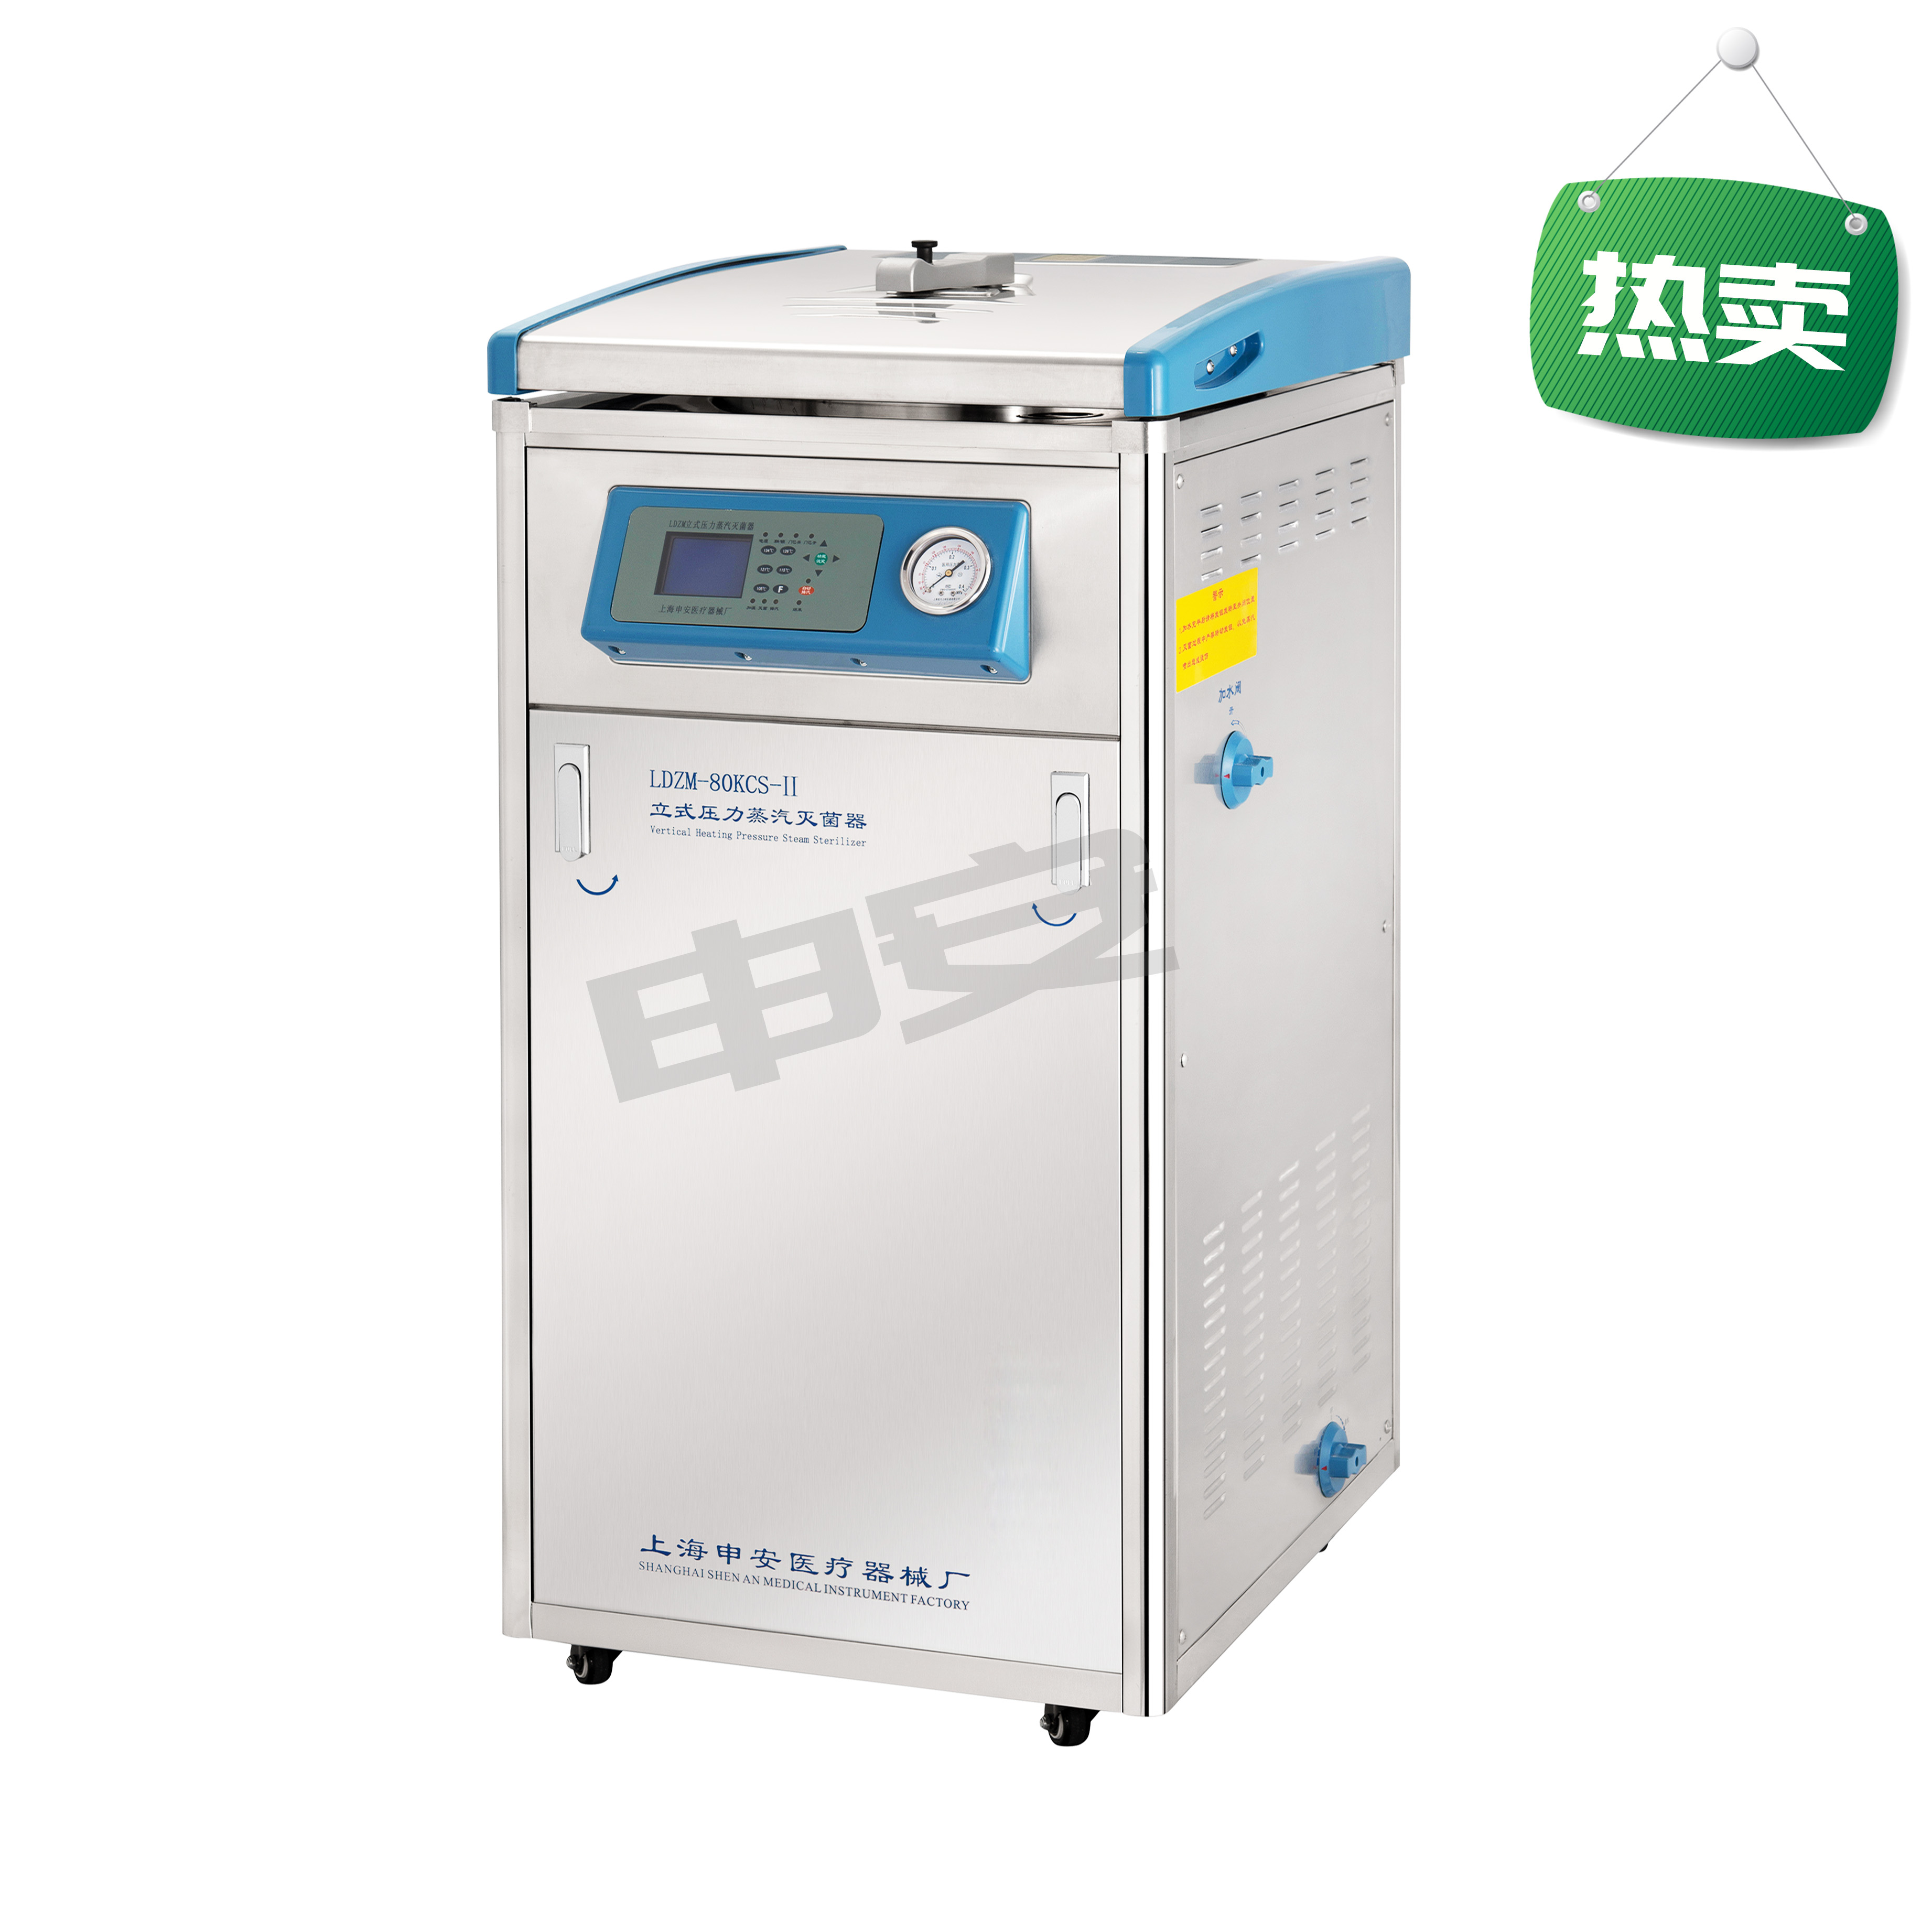 上海申安立式高压蒸汽灭菌器LDZM-80L 实验仪器  杭州诺丁科学器材有限公司